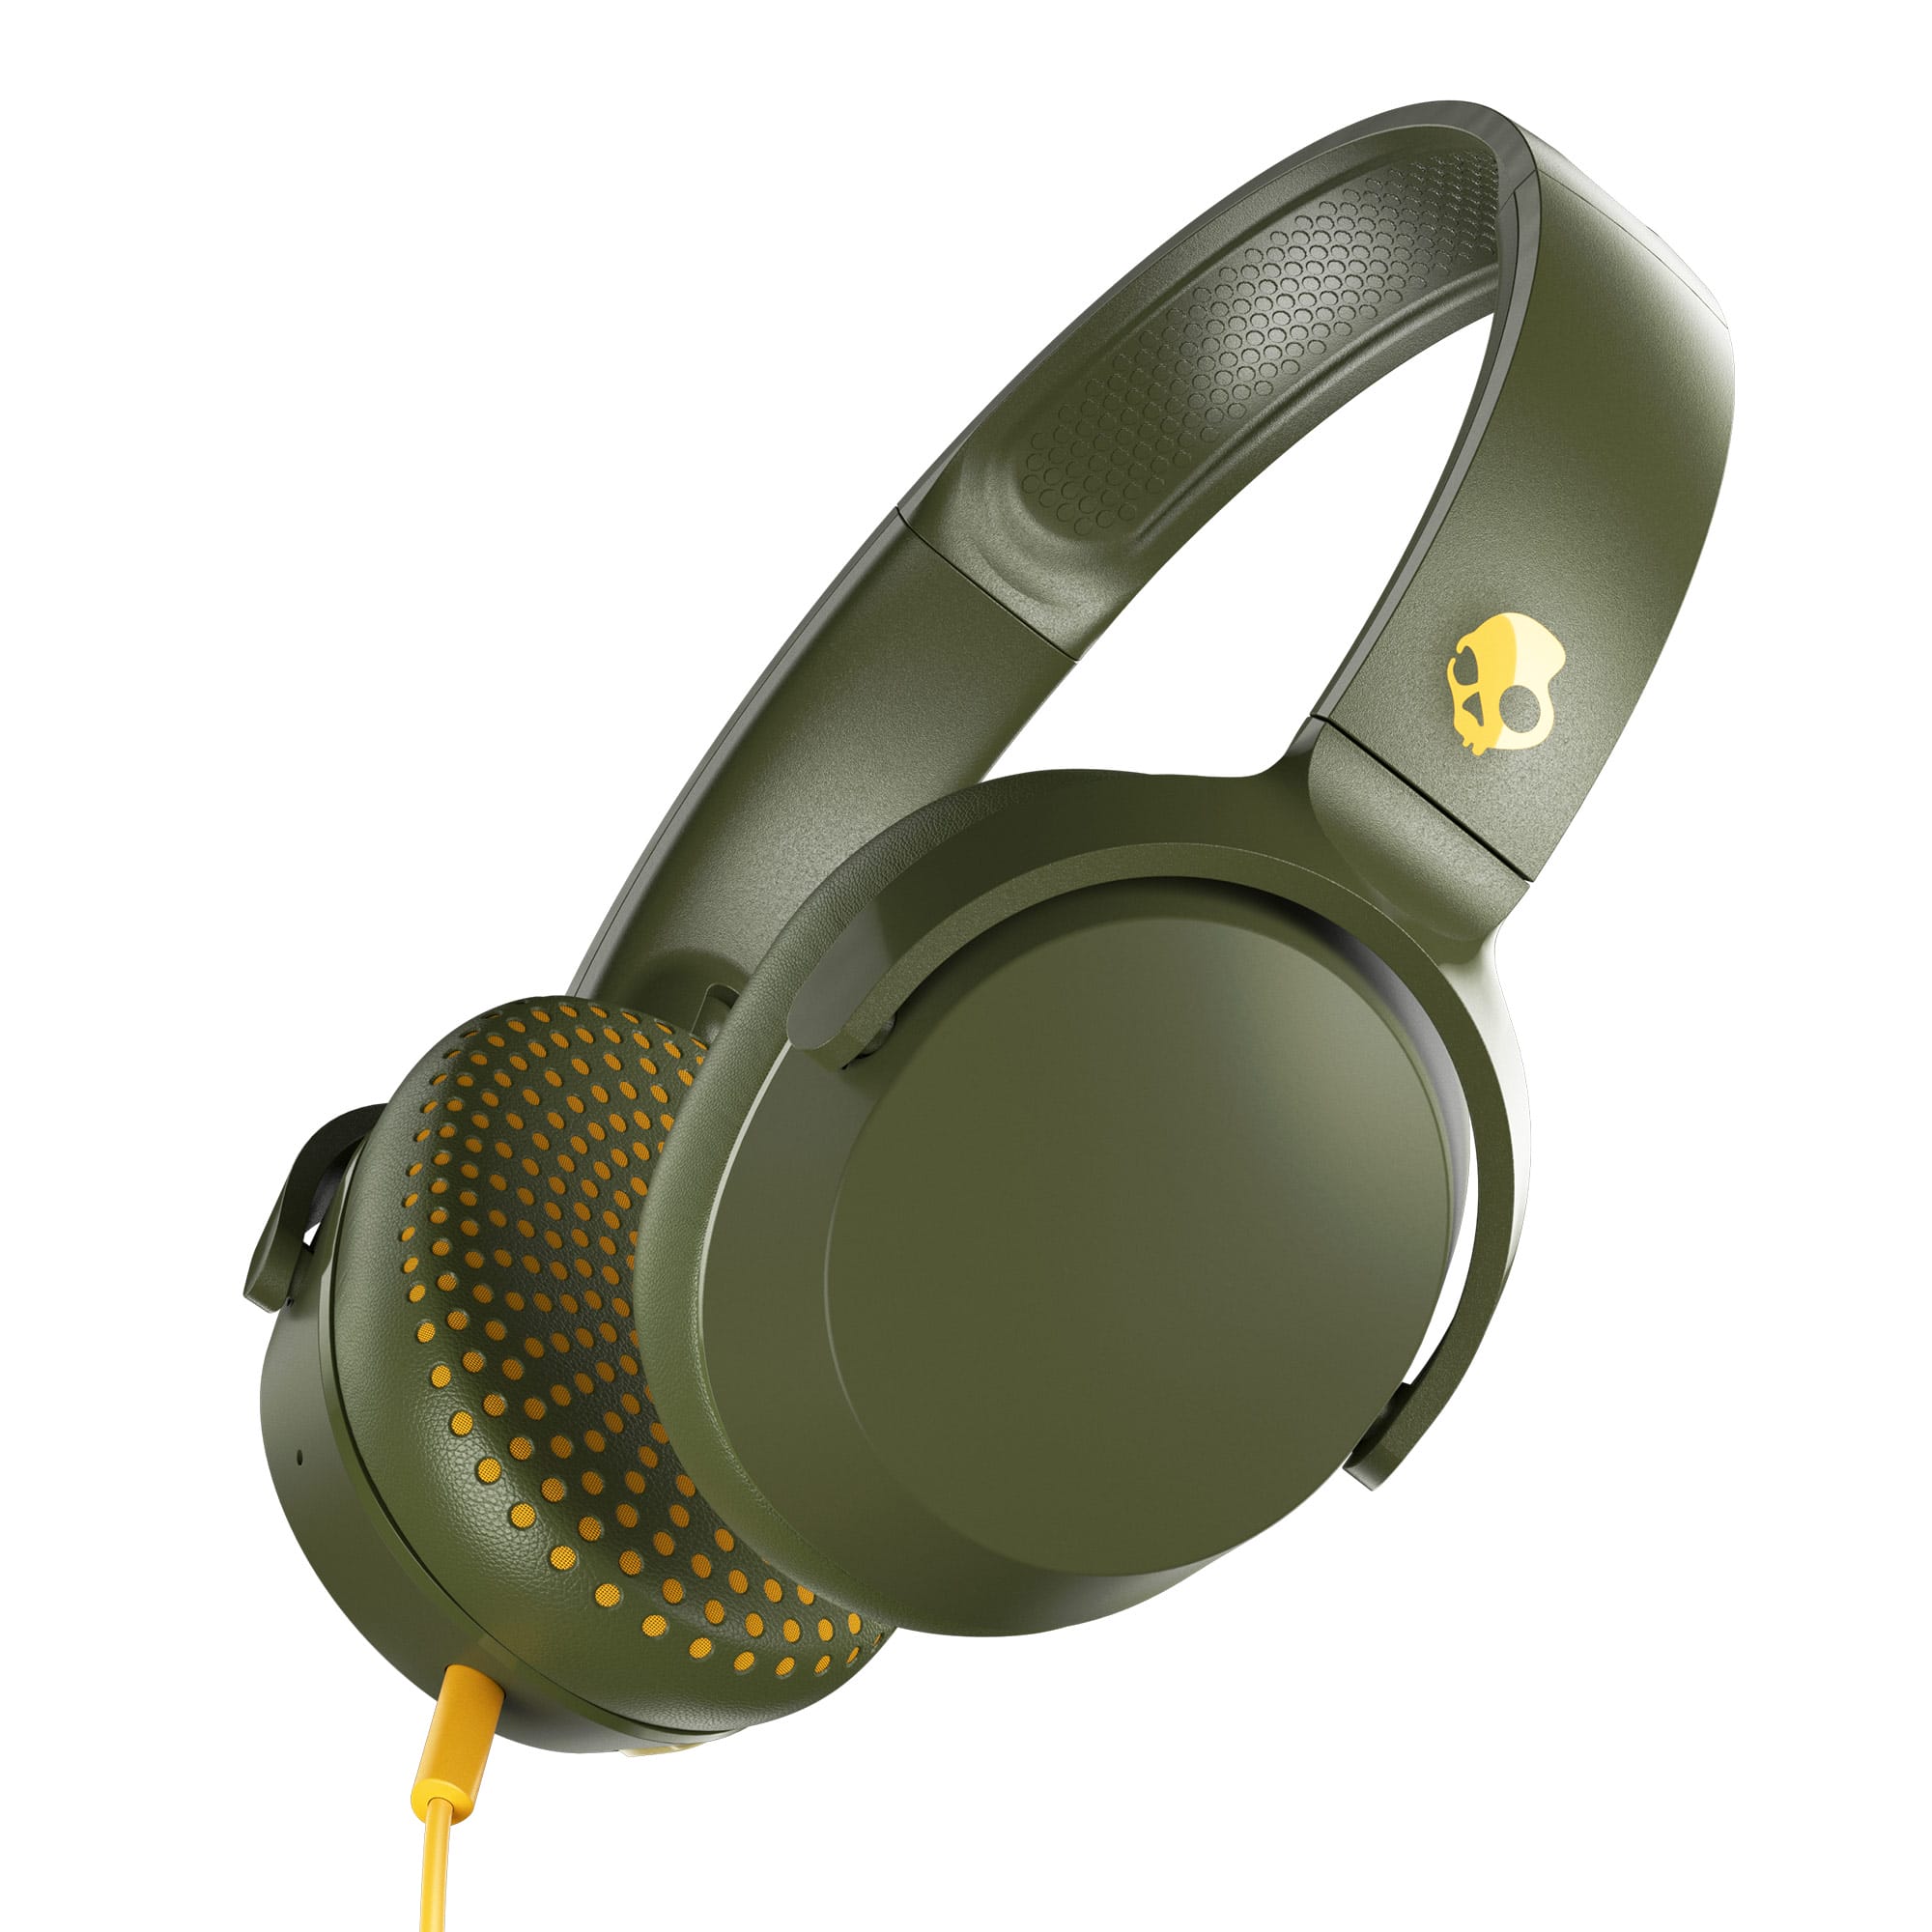 Skullcandy Riff On-Ear Durable Headphone – Olive for $19